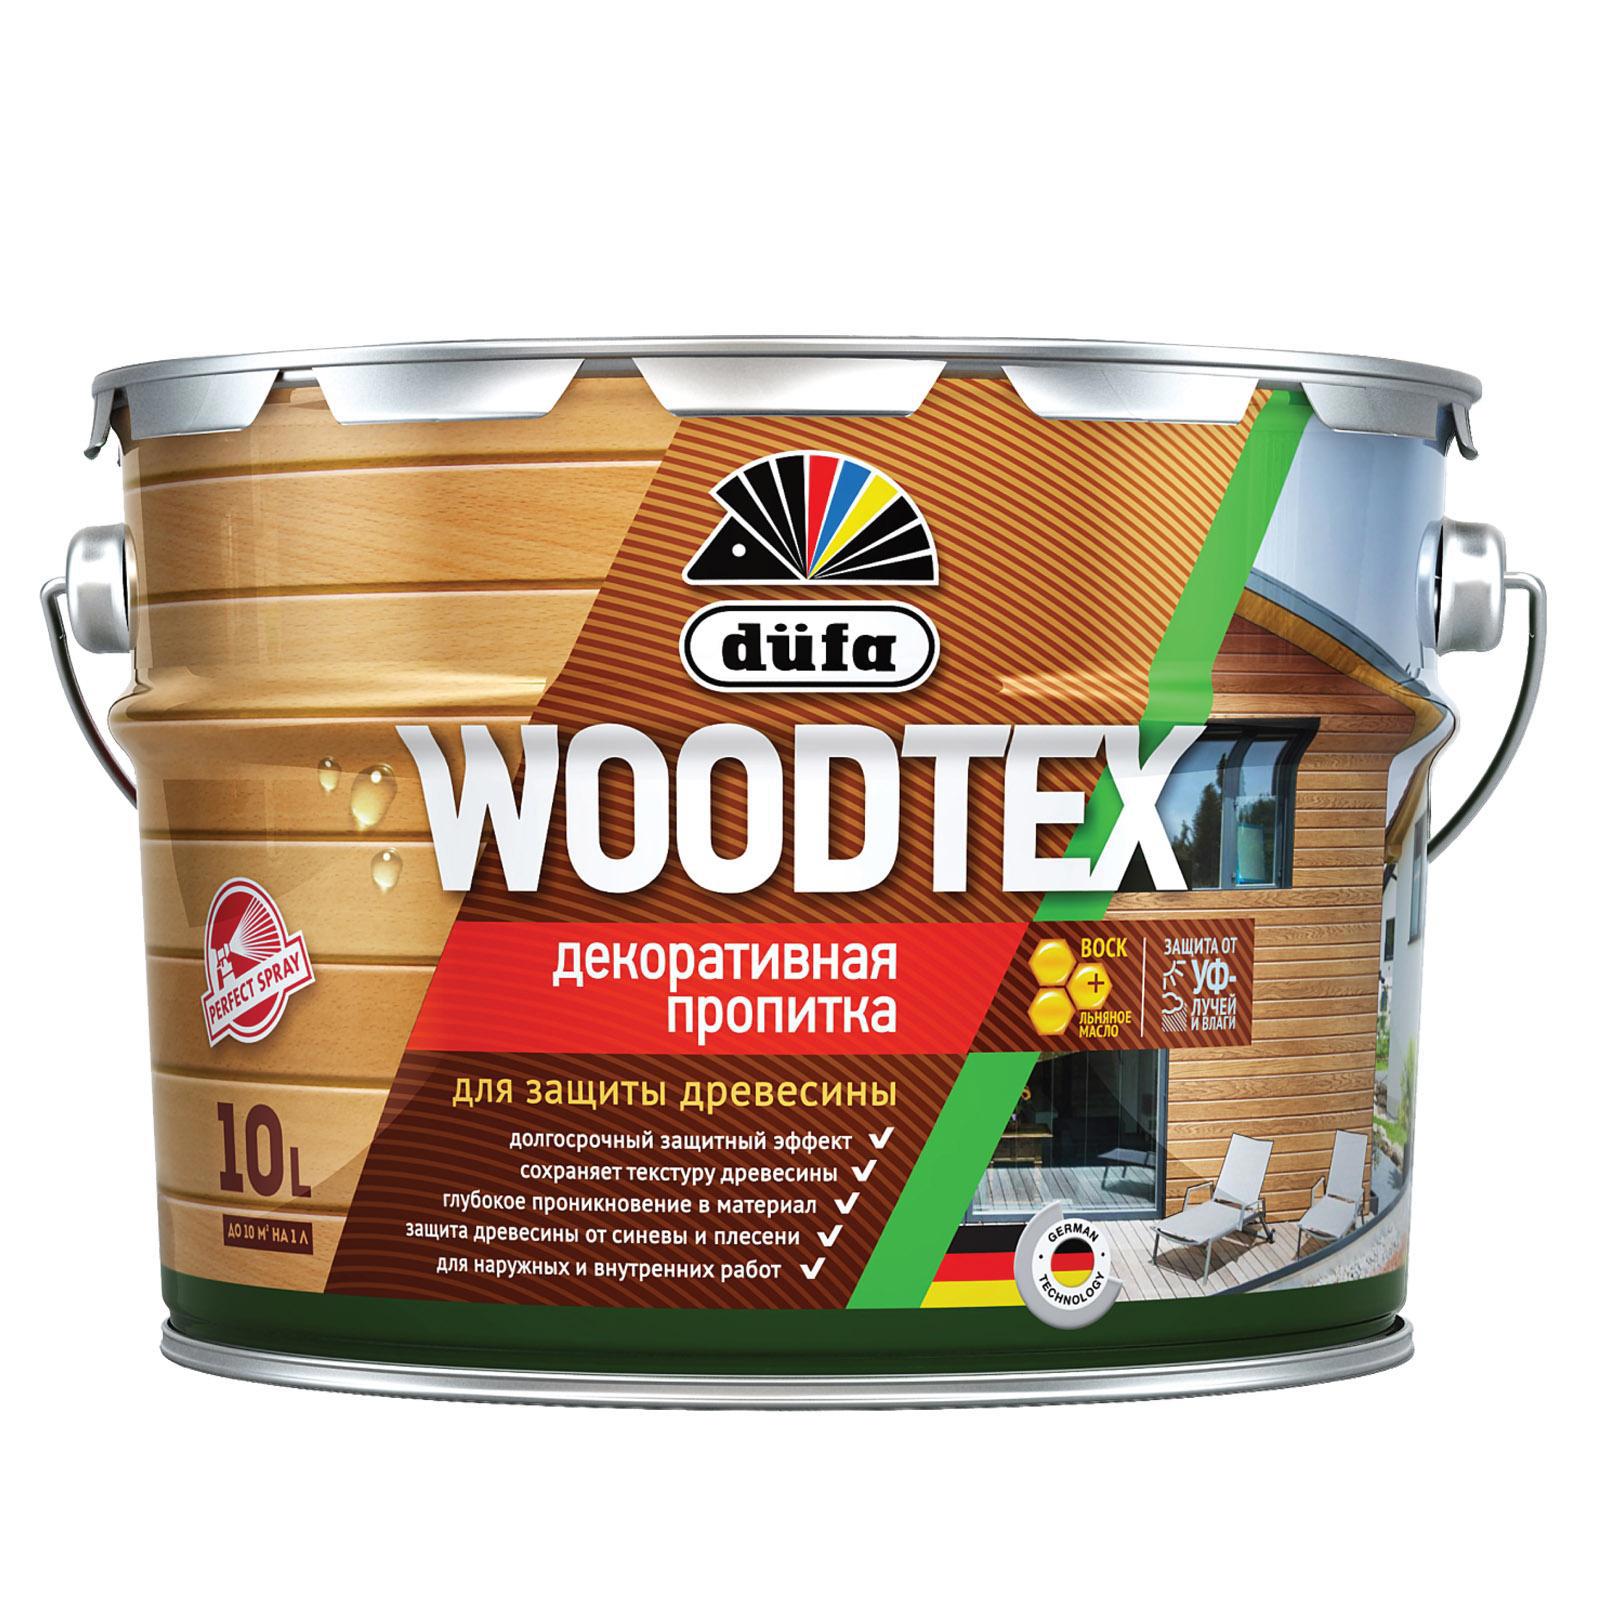 90194539 Пропитка декоративная для защиты древесины алкидная Woodtex палисандр 10 л STLM-0128471 DUFA